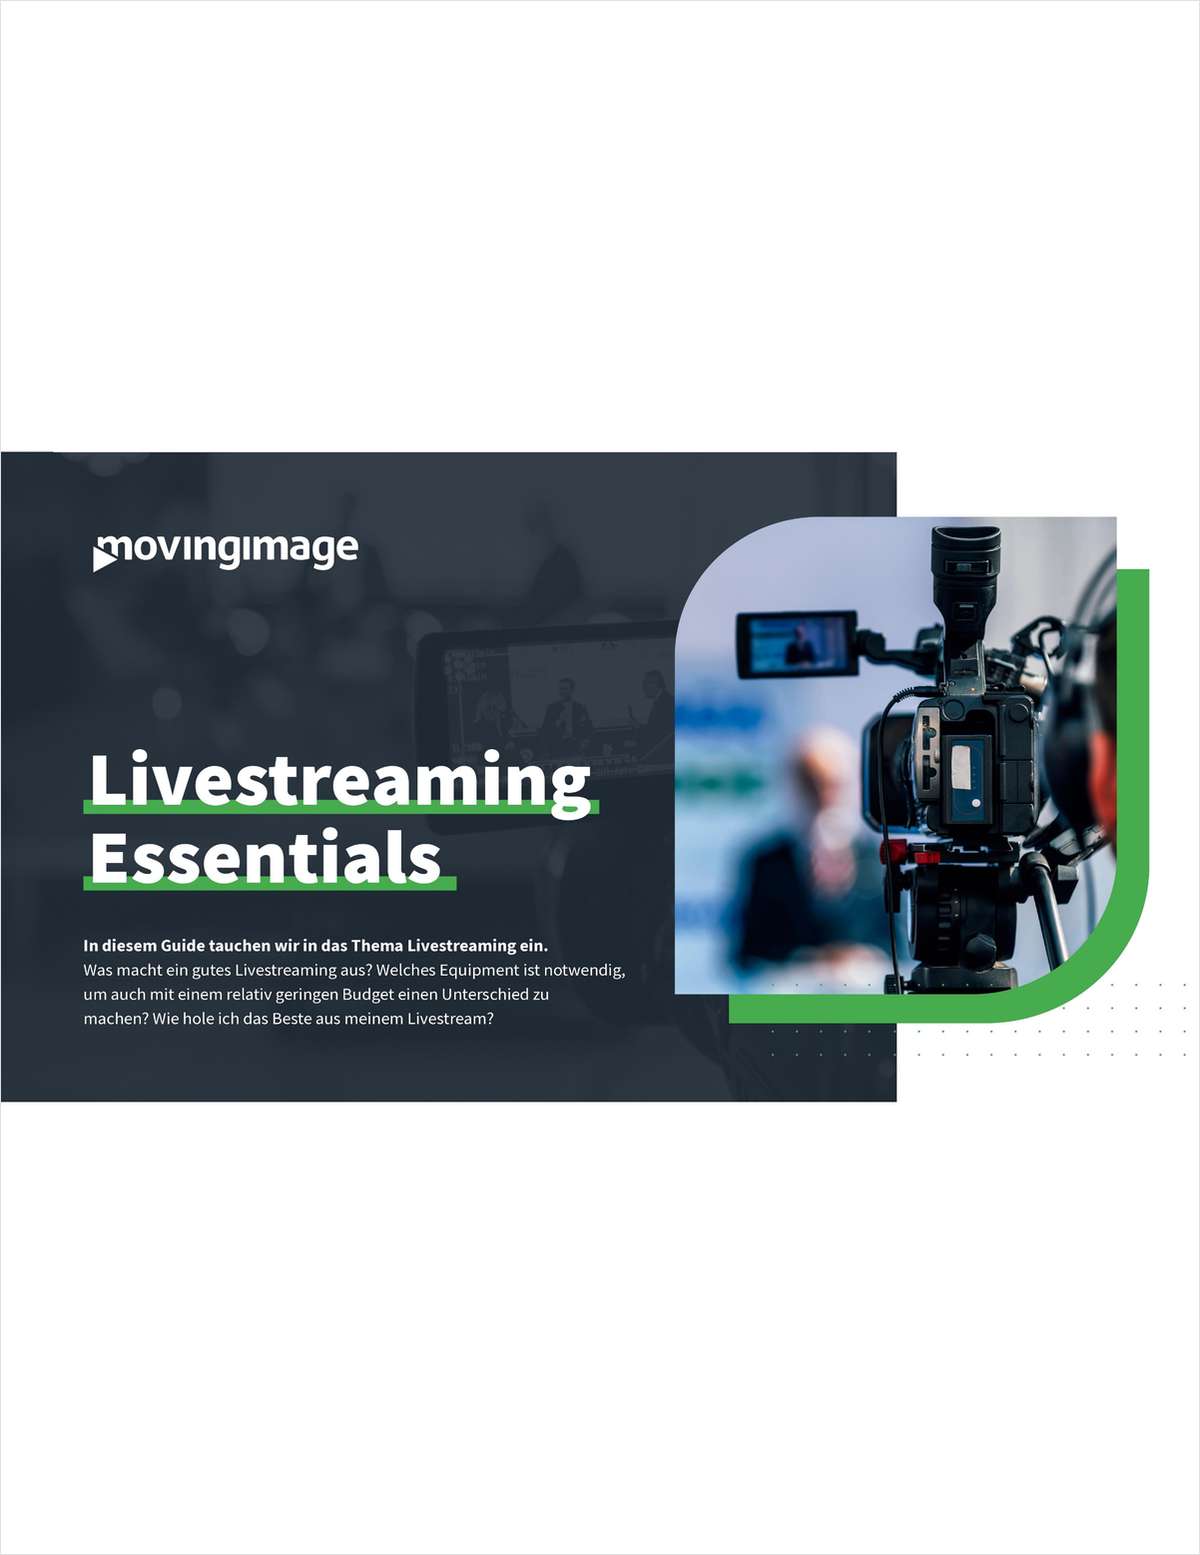 Livestreaming Essentials -- Must-Haves für Deinen Marketing-Mix